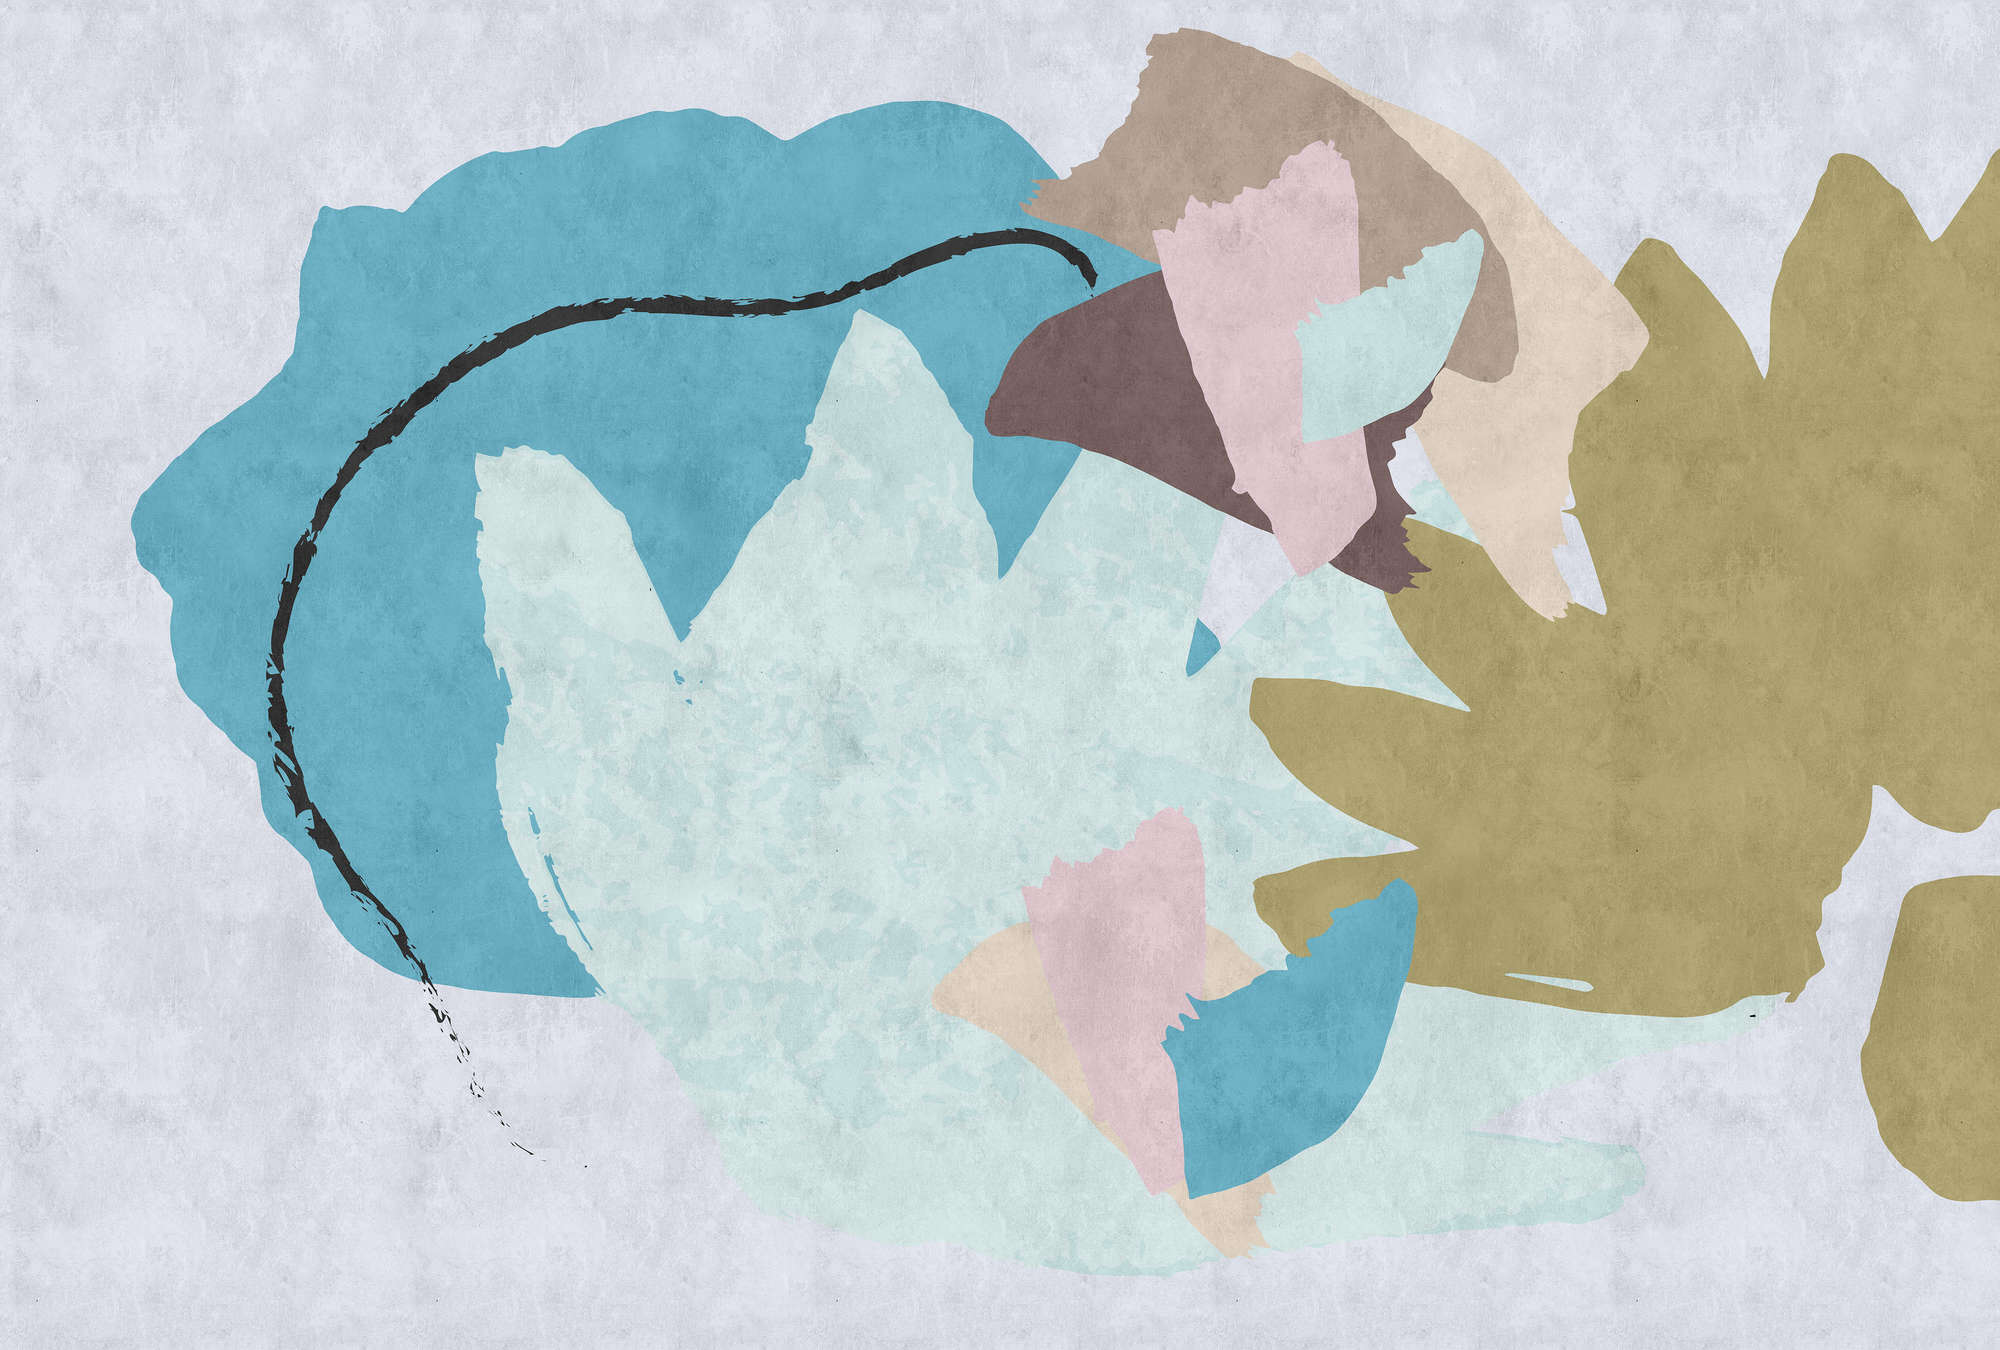             Collage Floral 1 - papel pintado abstracto de impresión digital, colorido arte estructura de papel secante - beige, azul | nácar liso no tejido
        